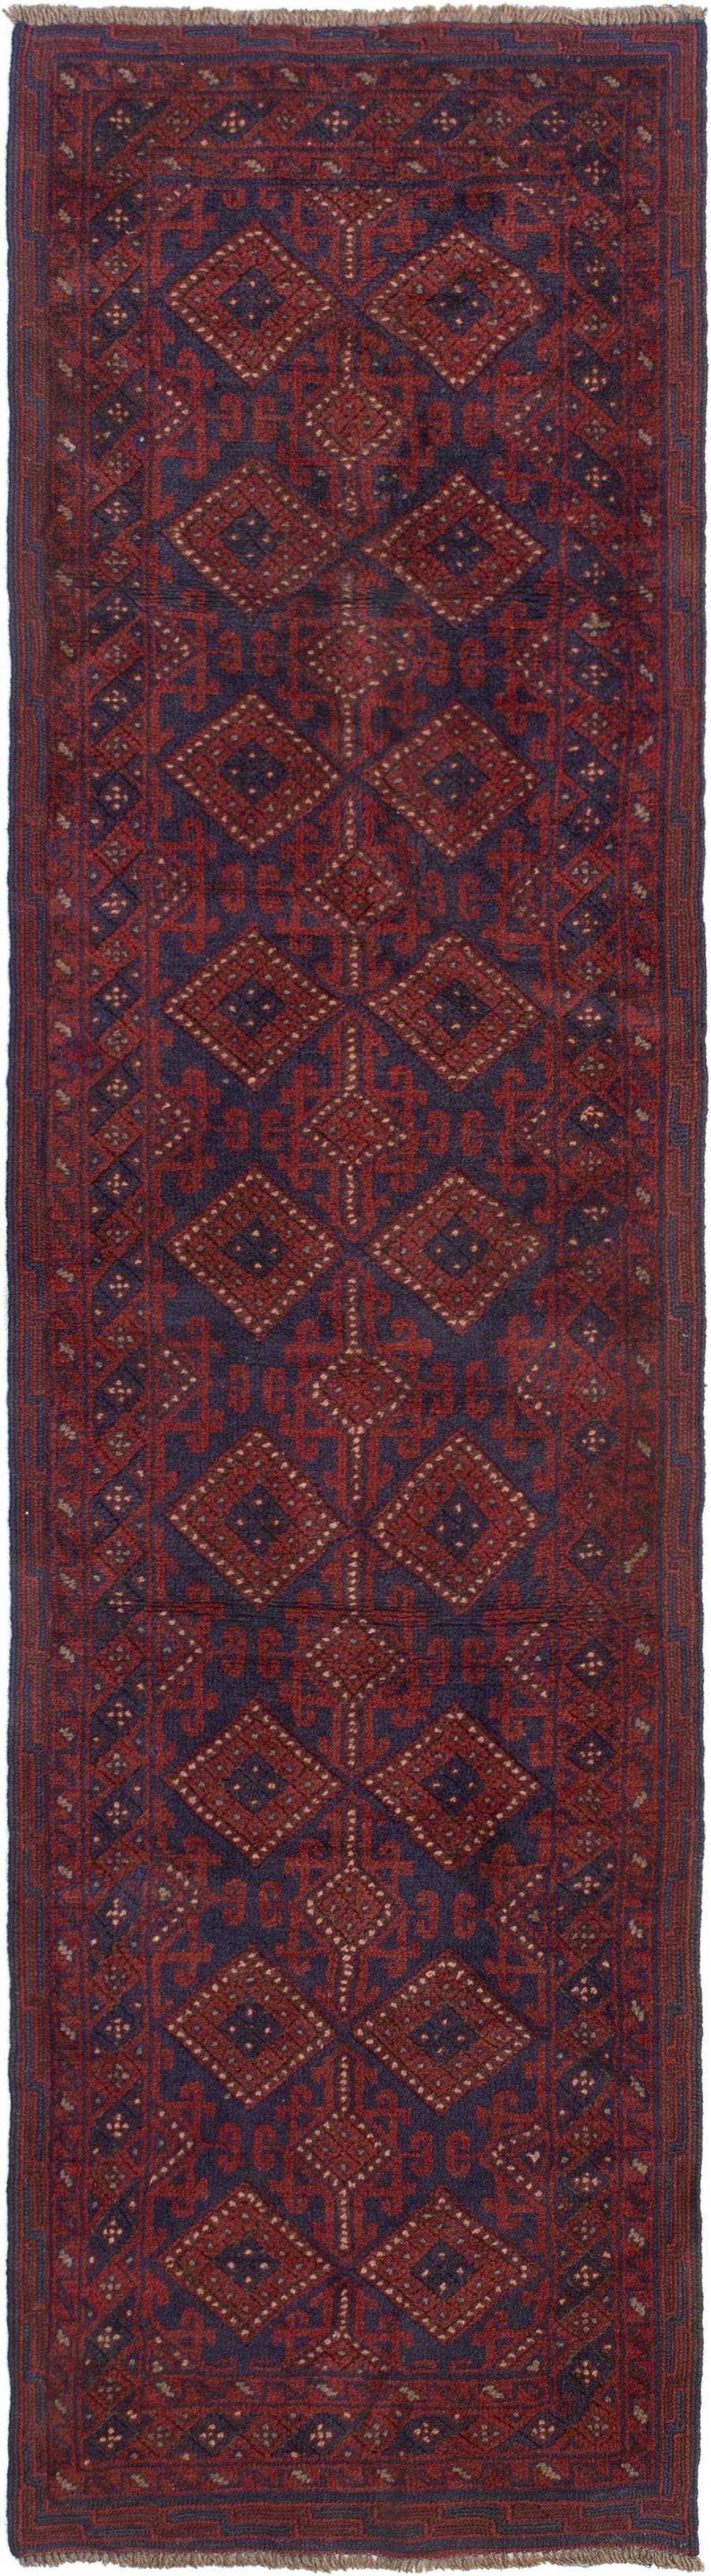 Hand-knotted Tajik Caucasian Dark Red Wool Rug 2'1" x 8'7"  Size: 2'1" x 8'7"  